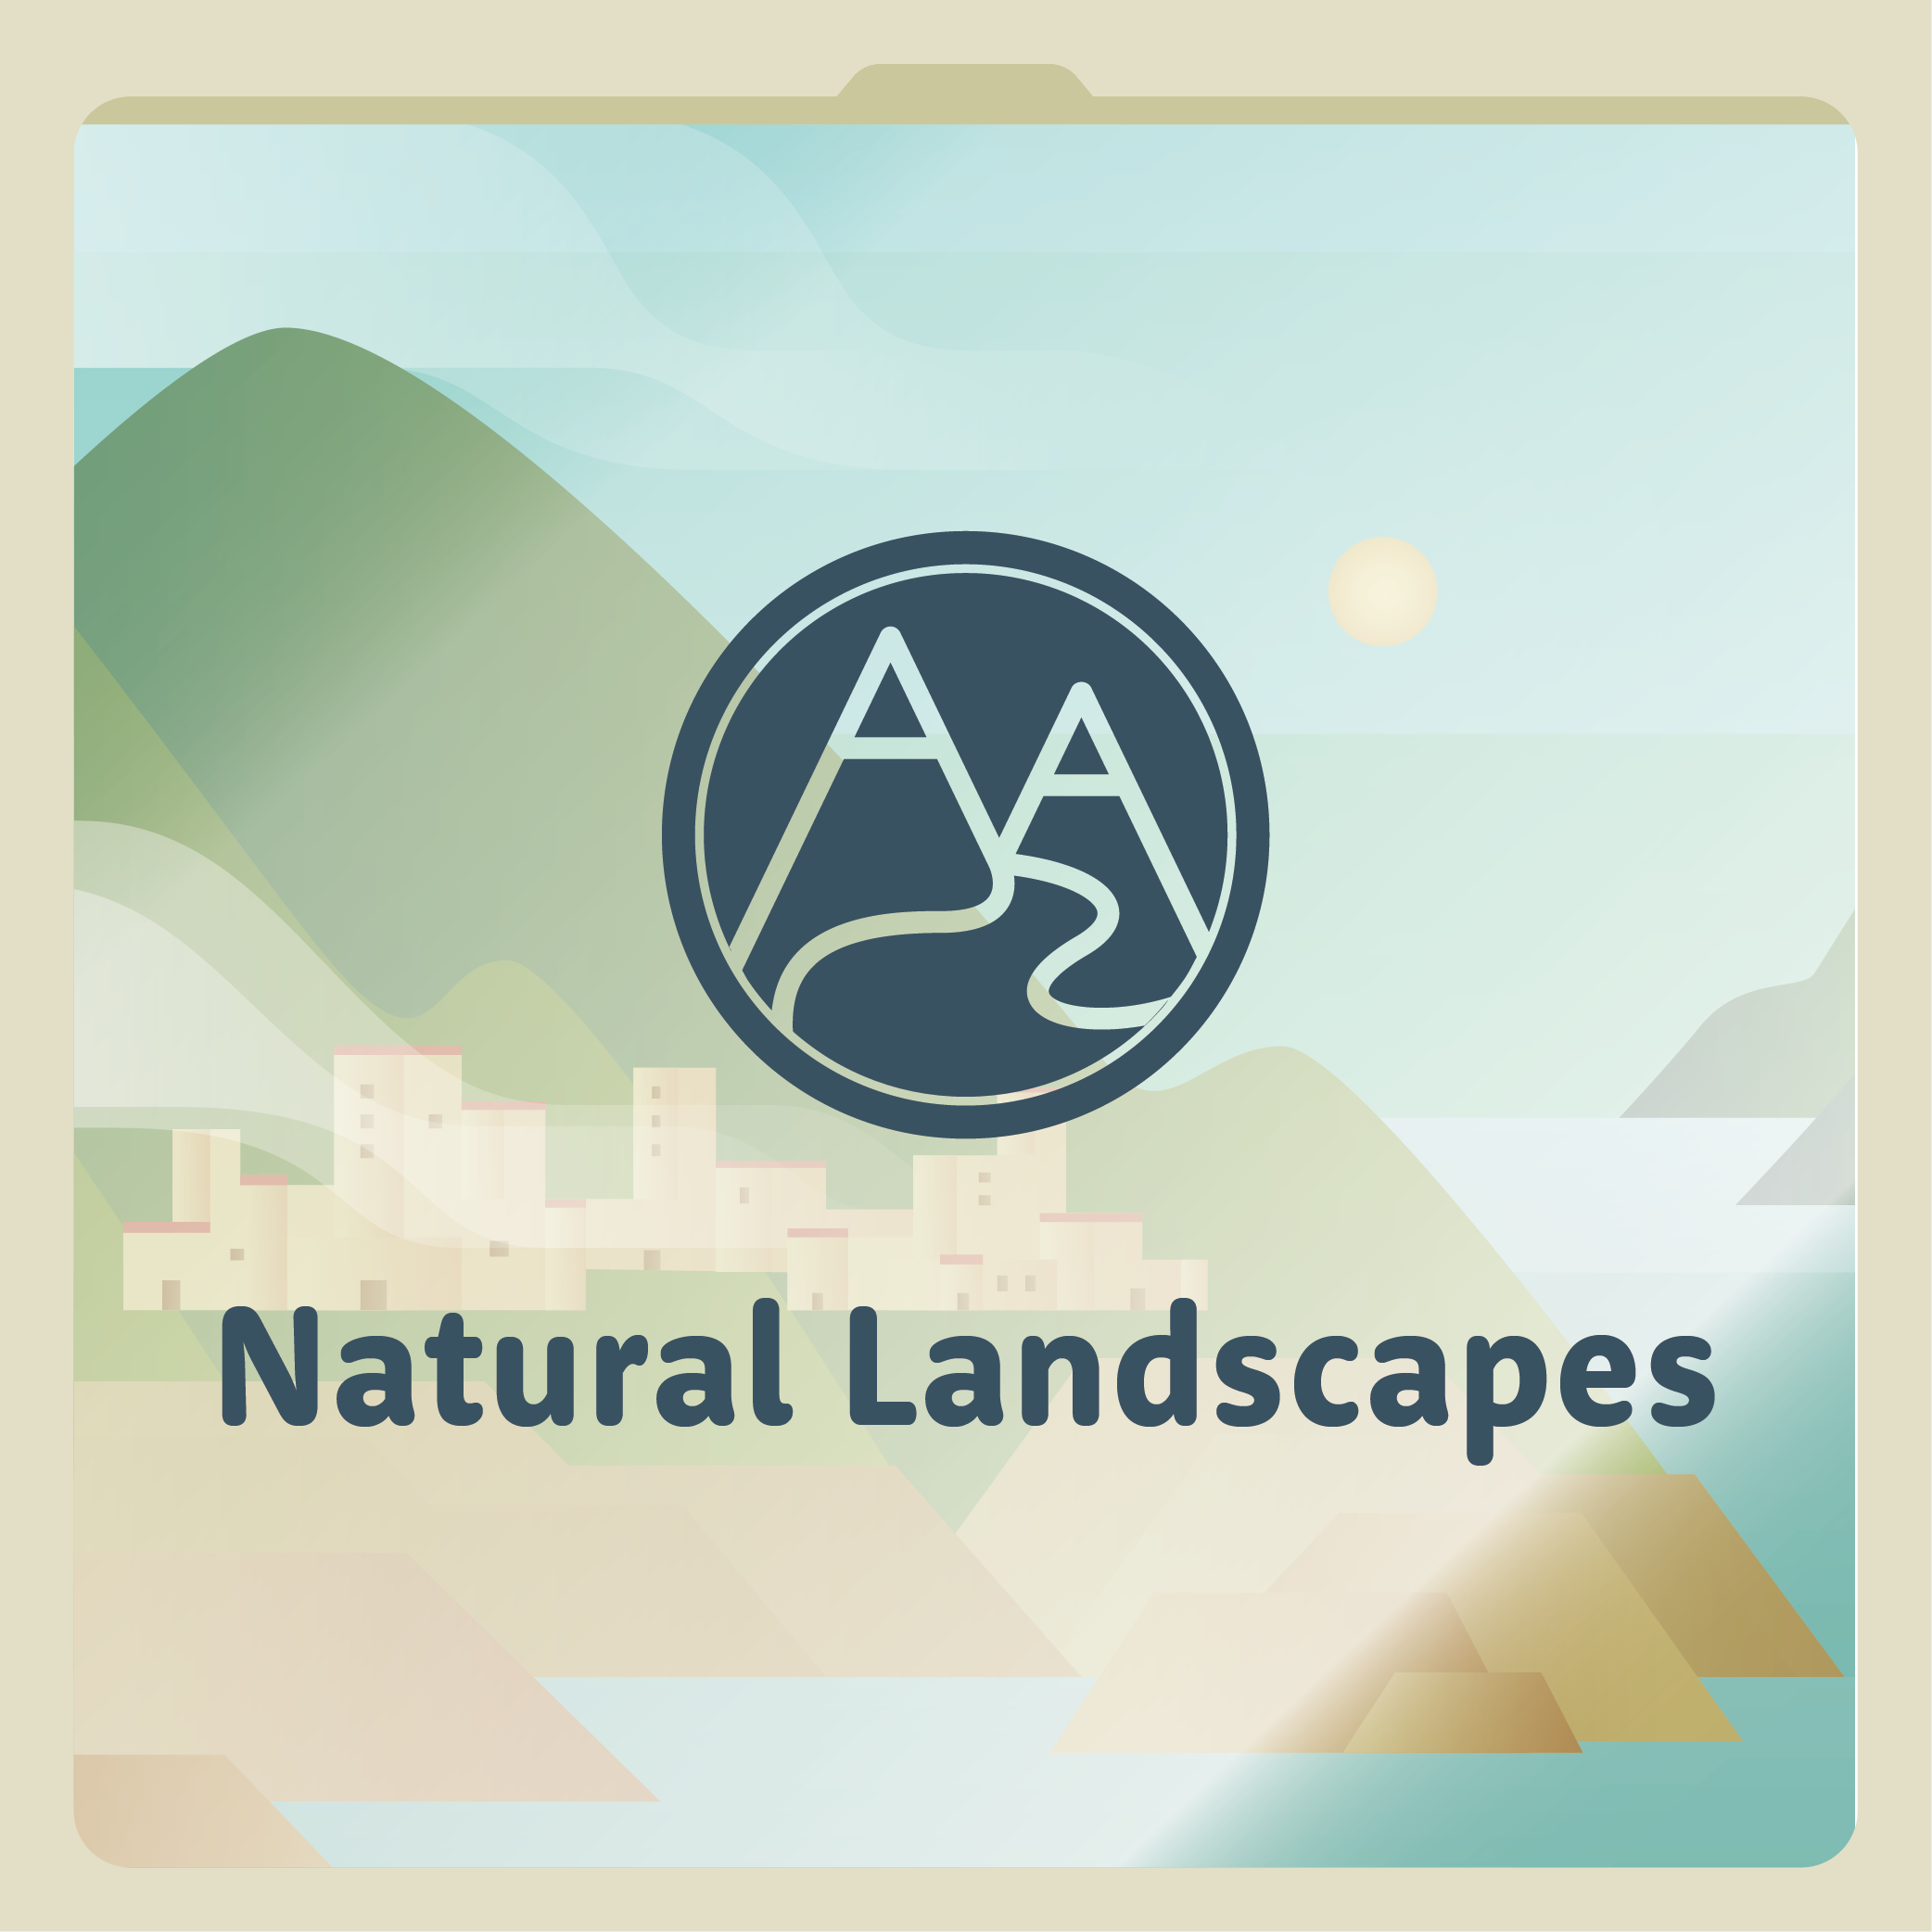 Natural Landscapes